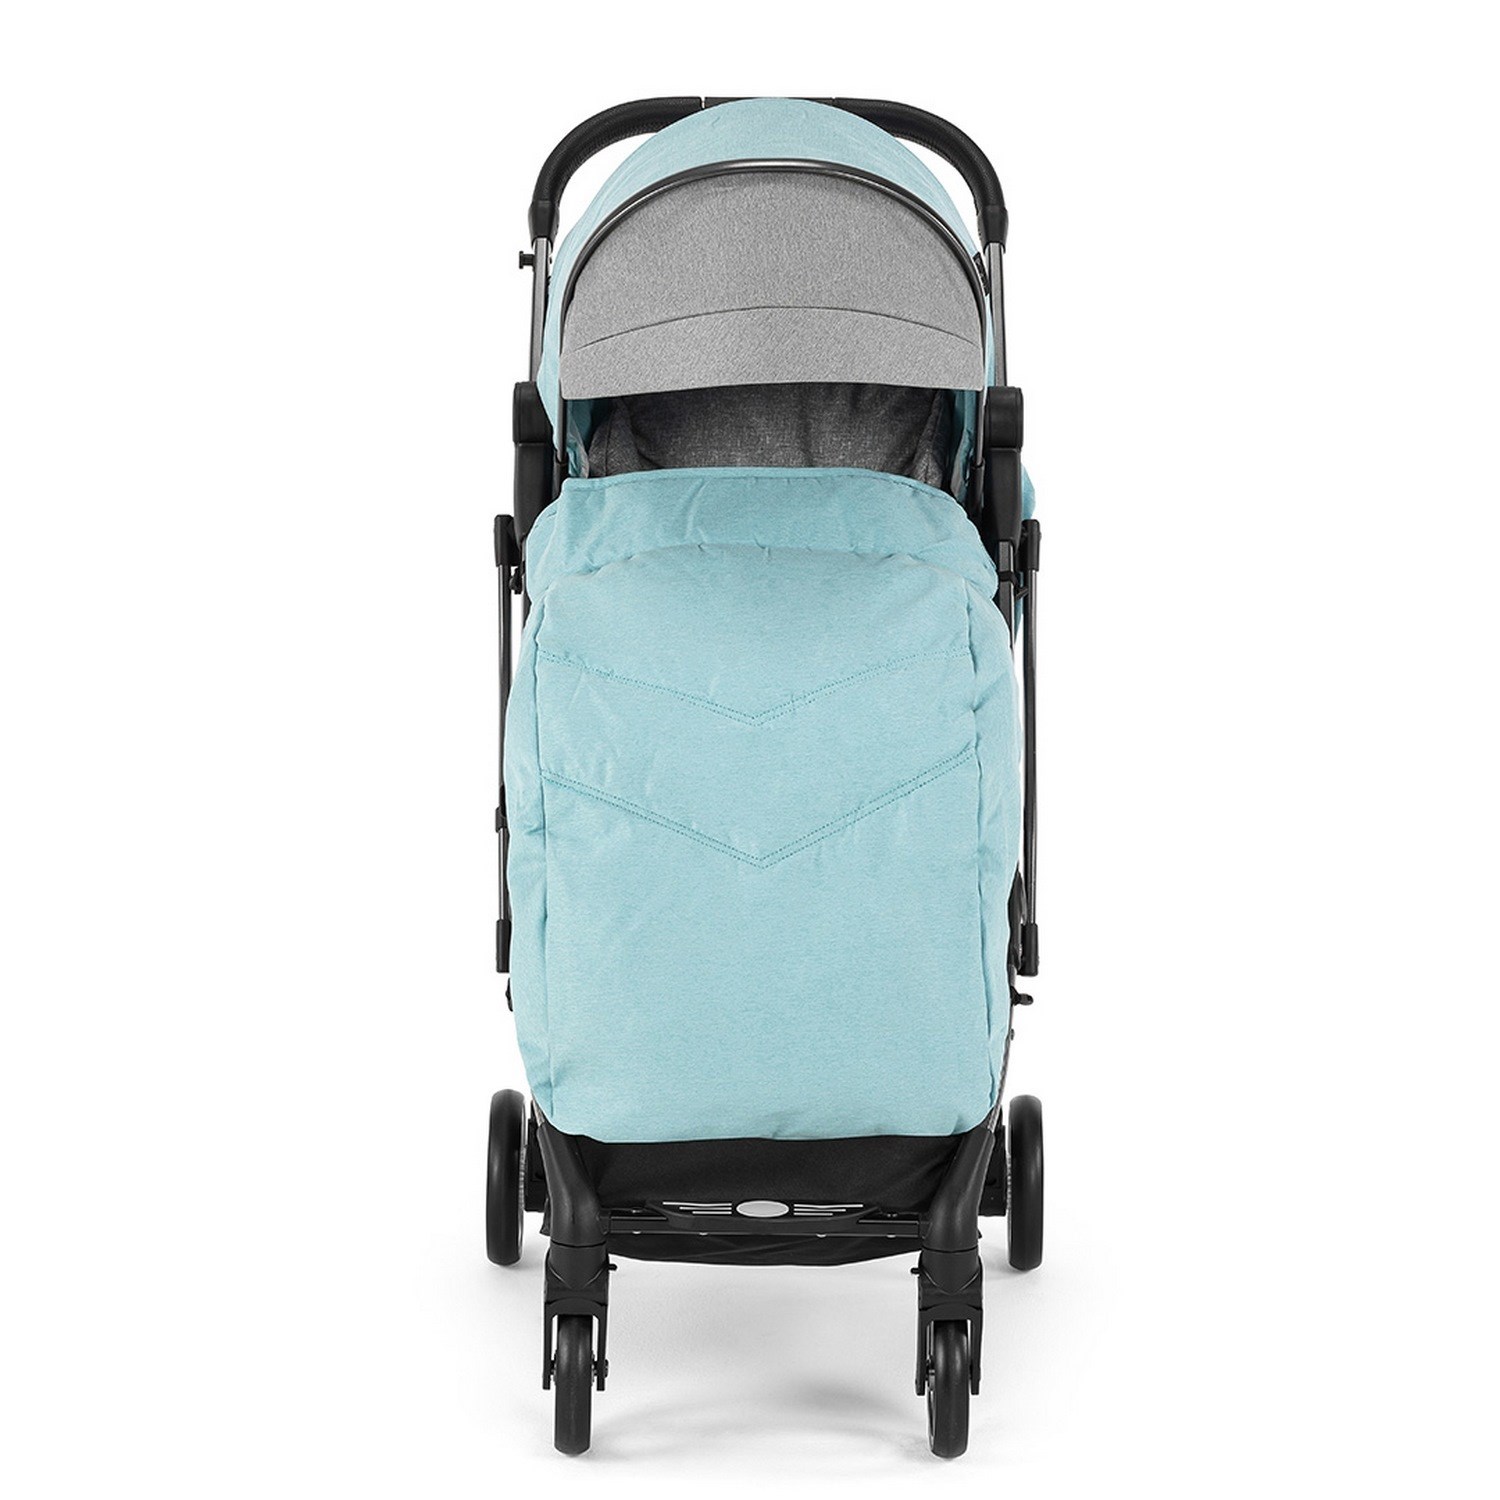 Pierre Cardin Vovo Bebek Arabası Mavi